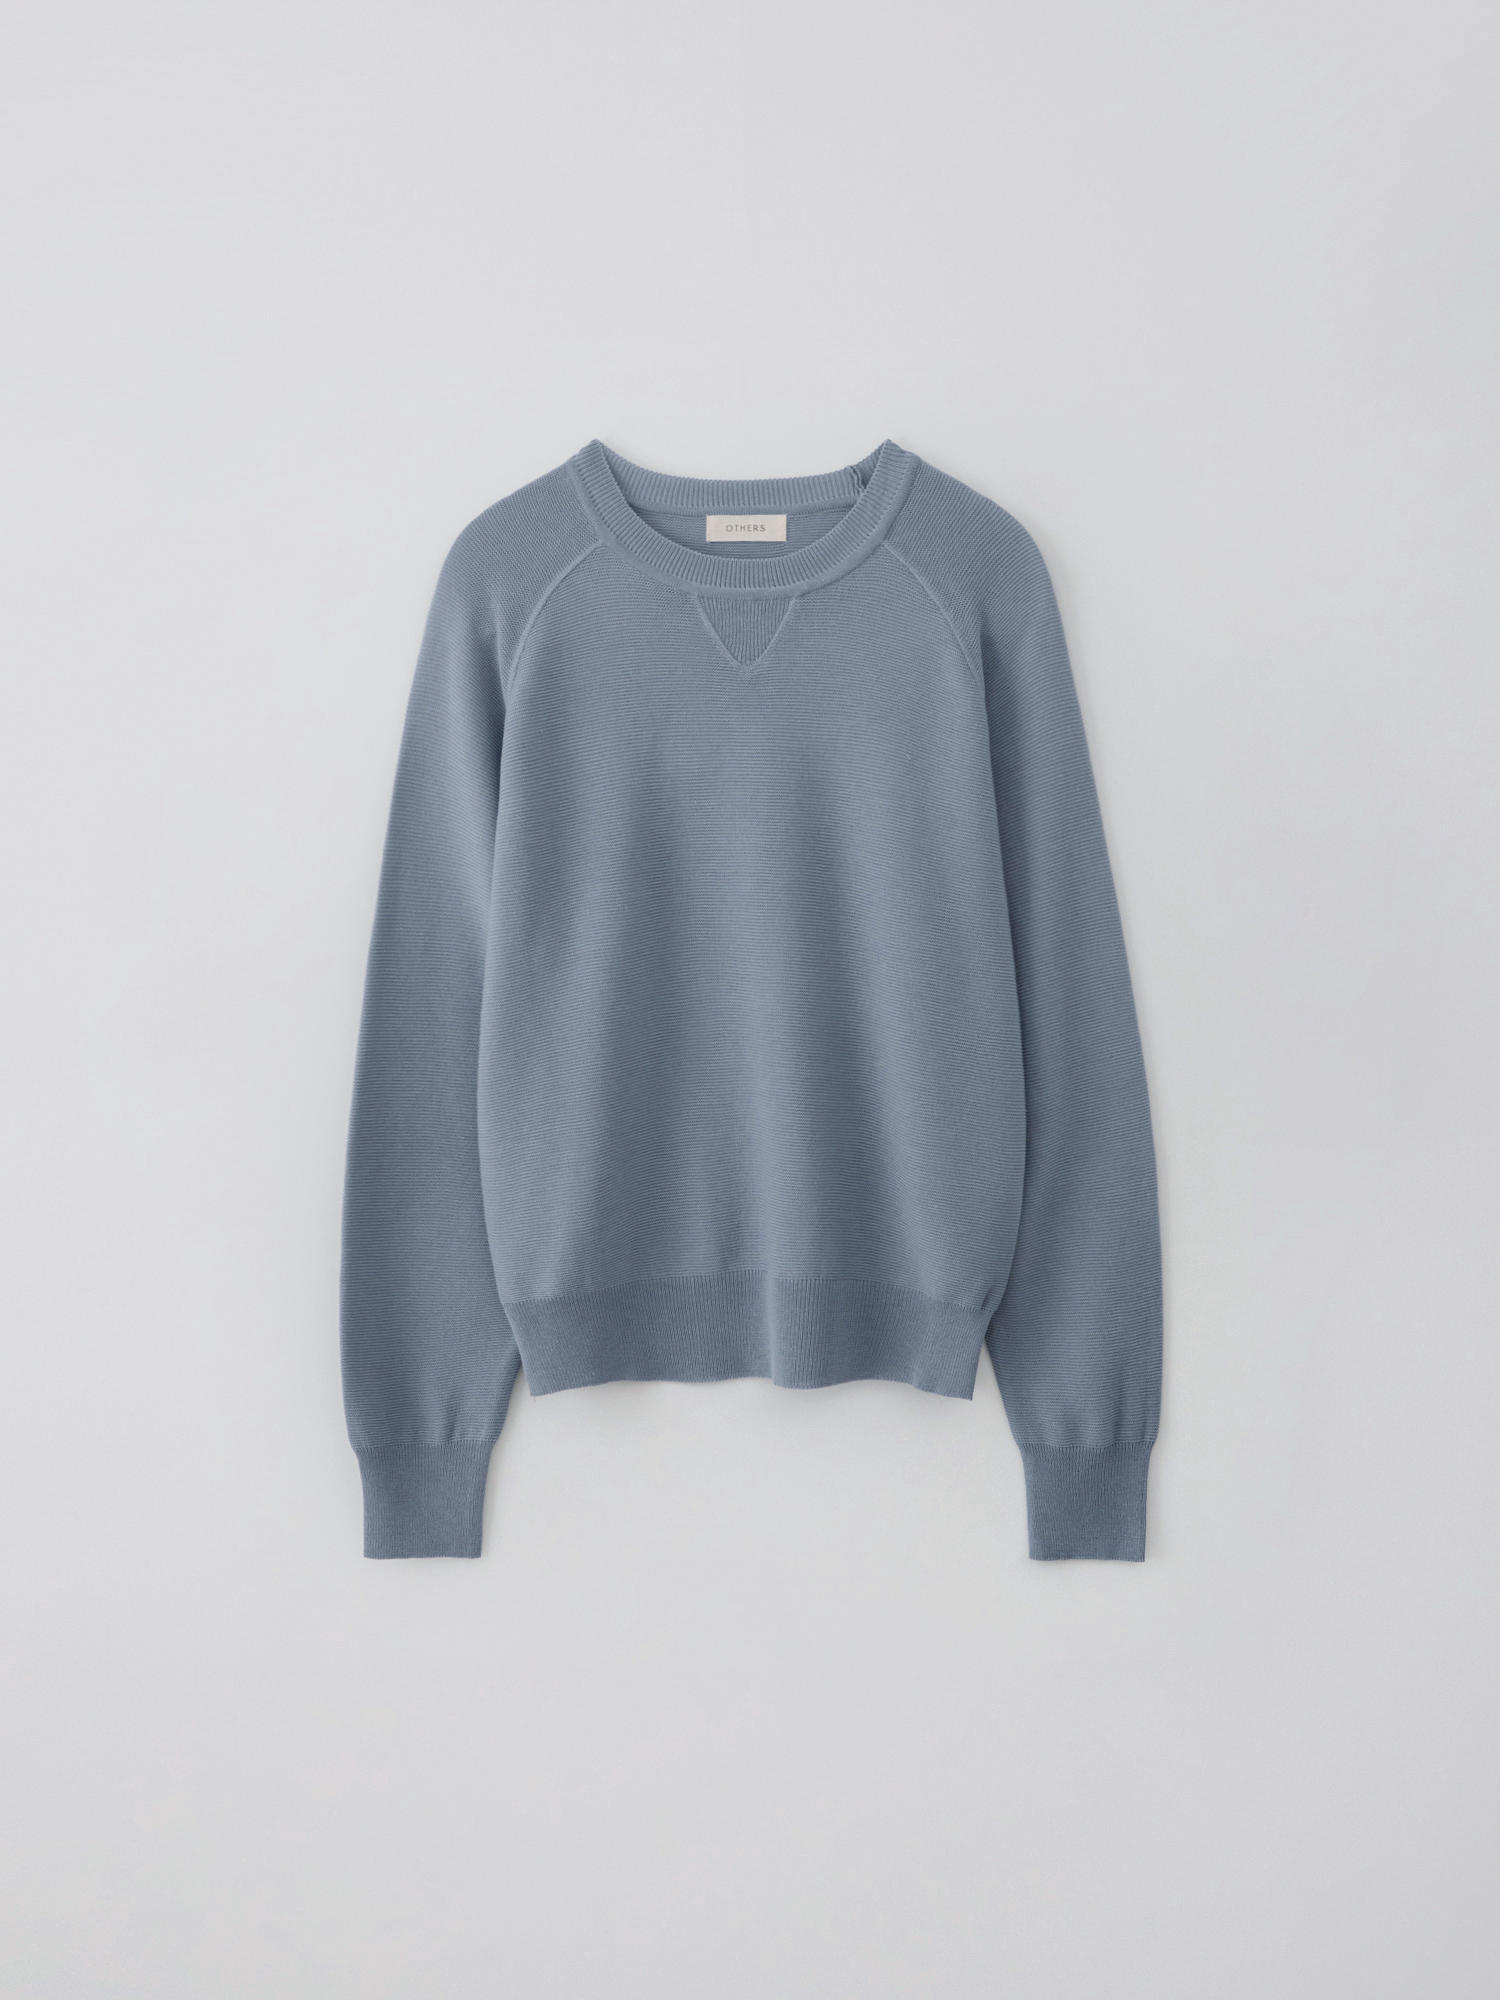 Knitted sweat shirt (blue gray)